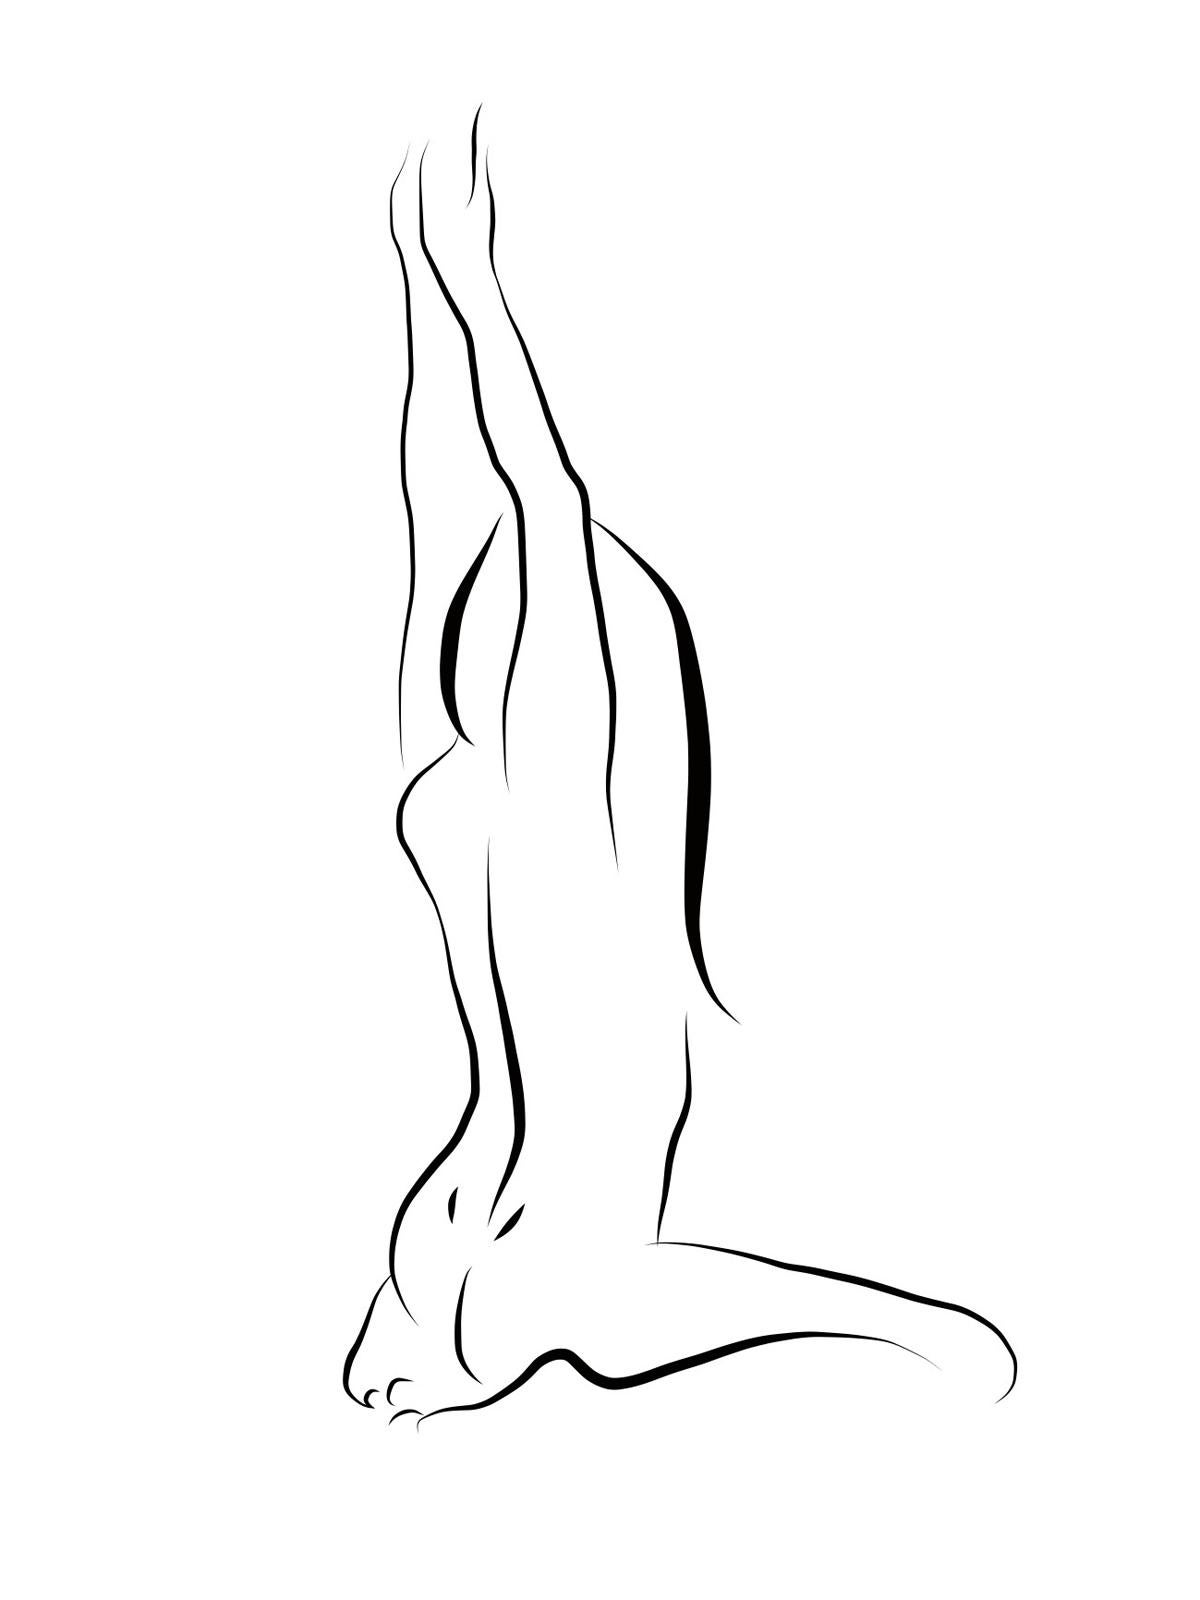 Michael Binkley Nude Print – Haiku #49, 1/50 - Digitale Vector-Zeichnung kniende weibliche nackte weibliche Aktfigur, Figur